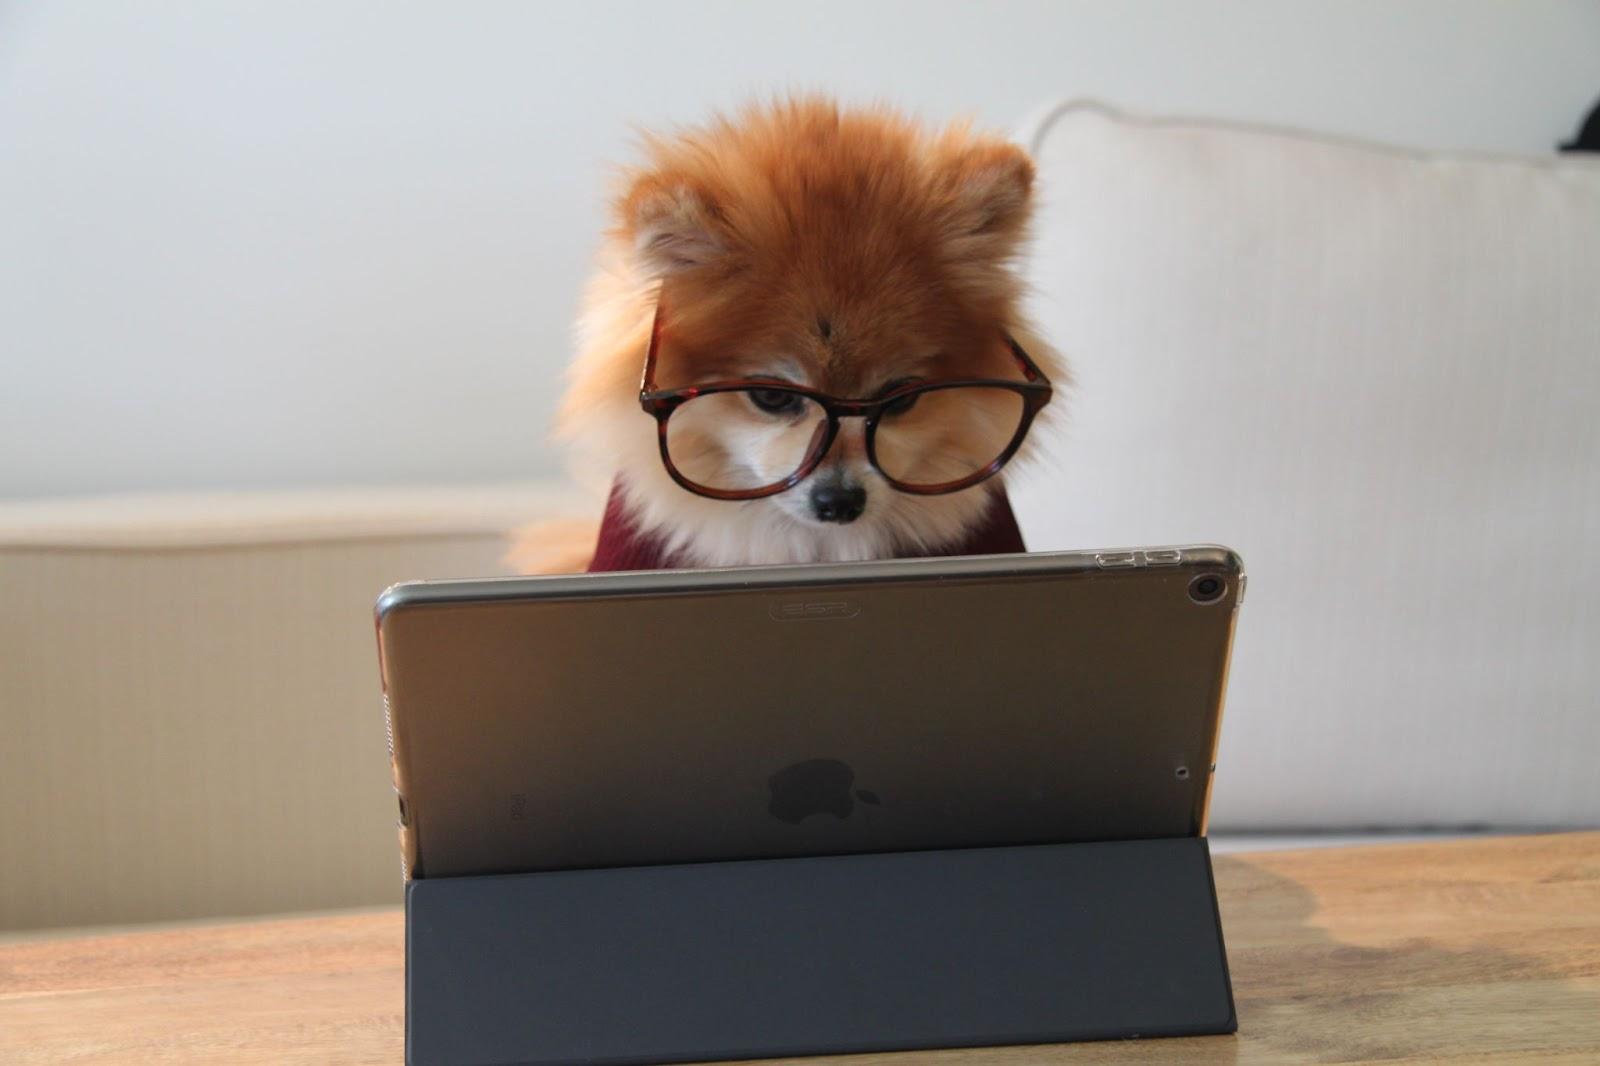 Imagem mostrando um cachorrinho de tamanho pequeno, com pelagem alta, e da cor branca e marrom, usando óculos, e sentado de frente para um tablet.